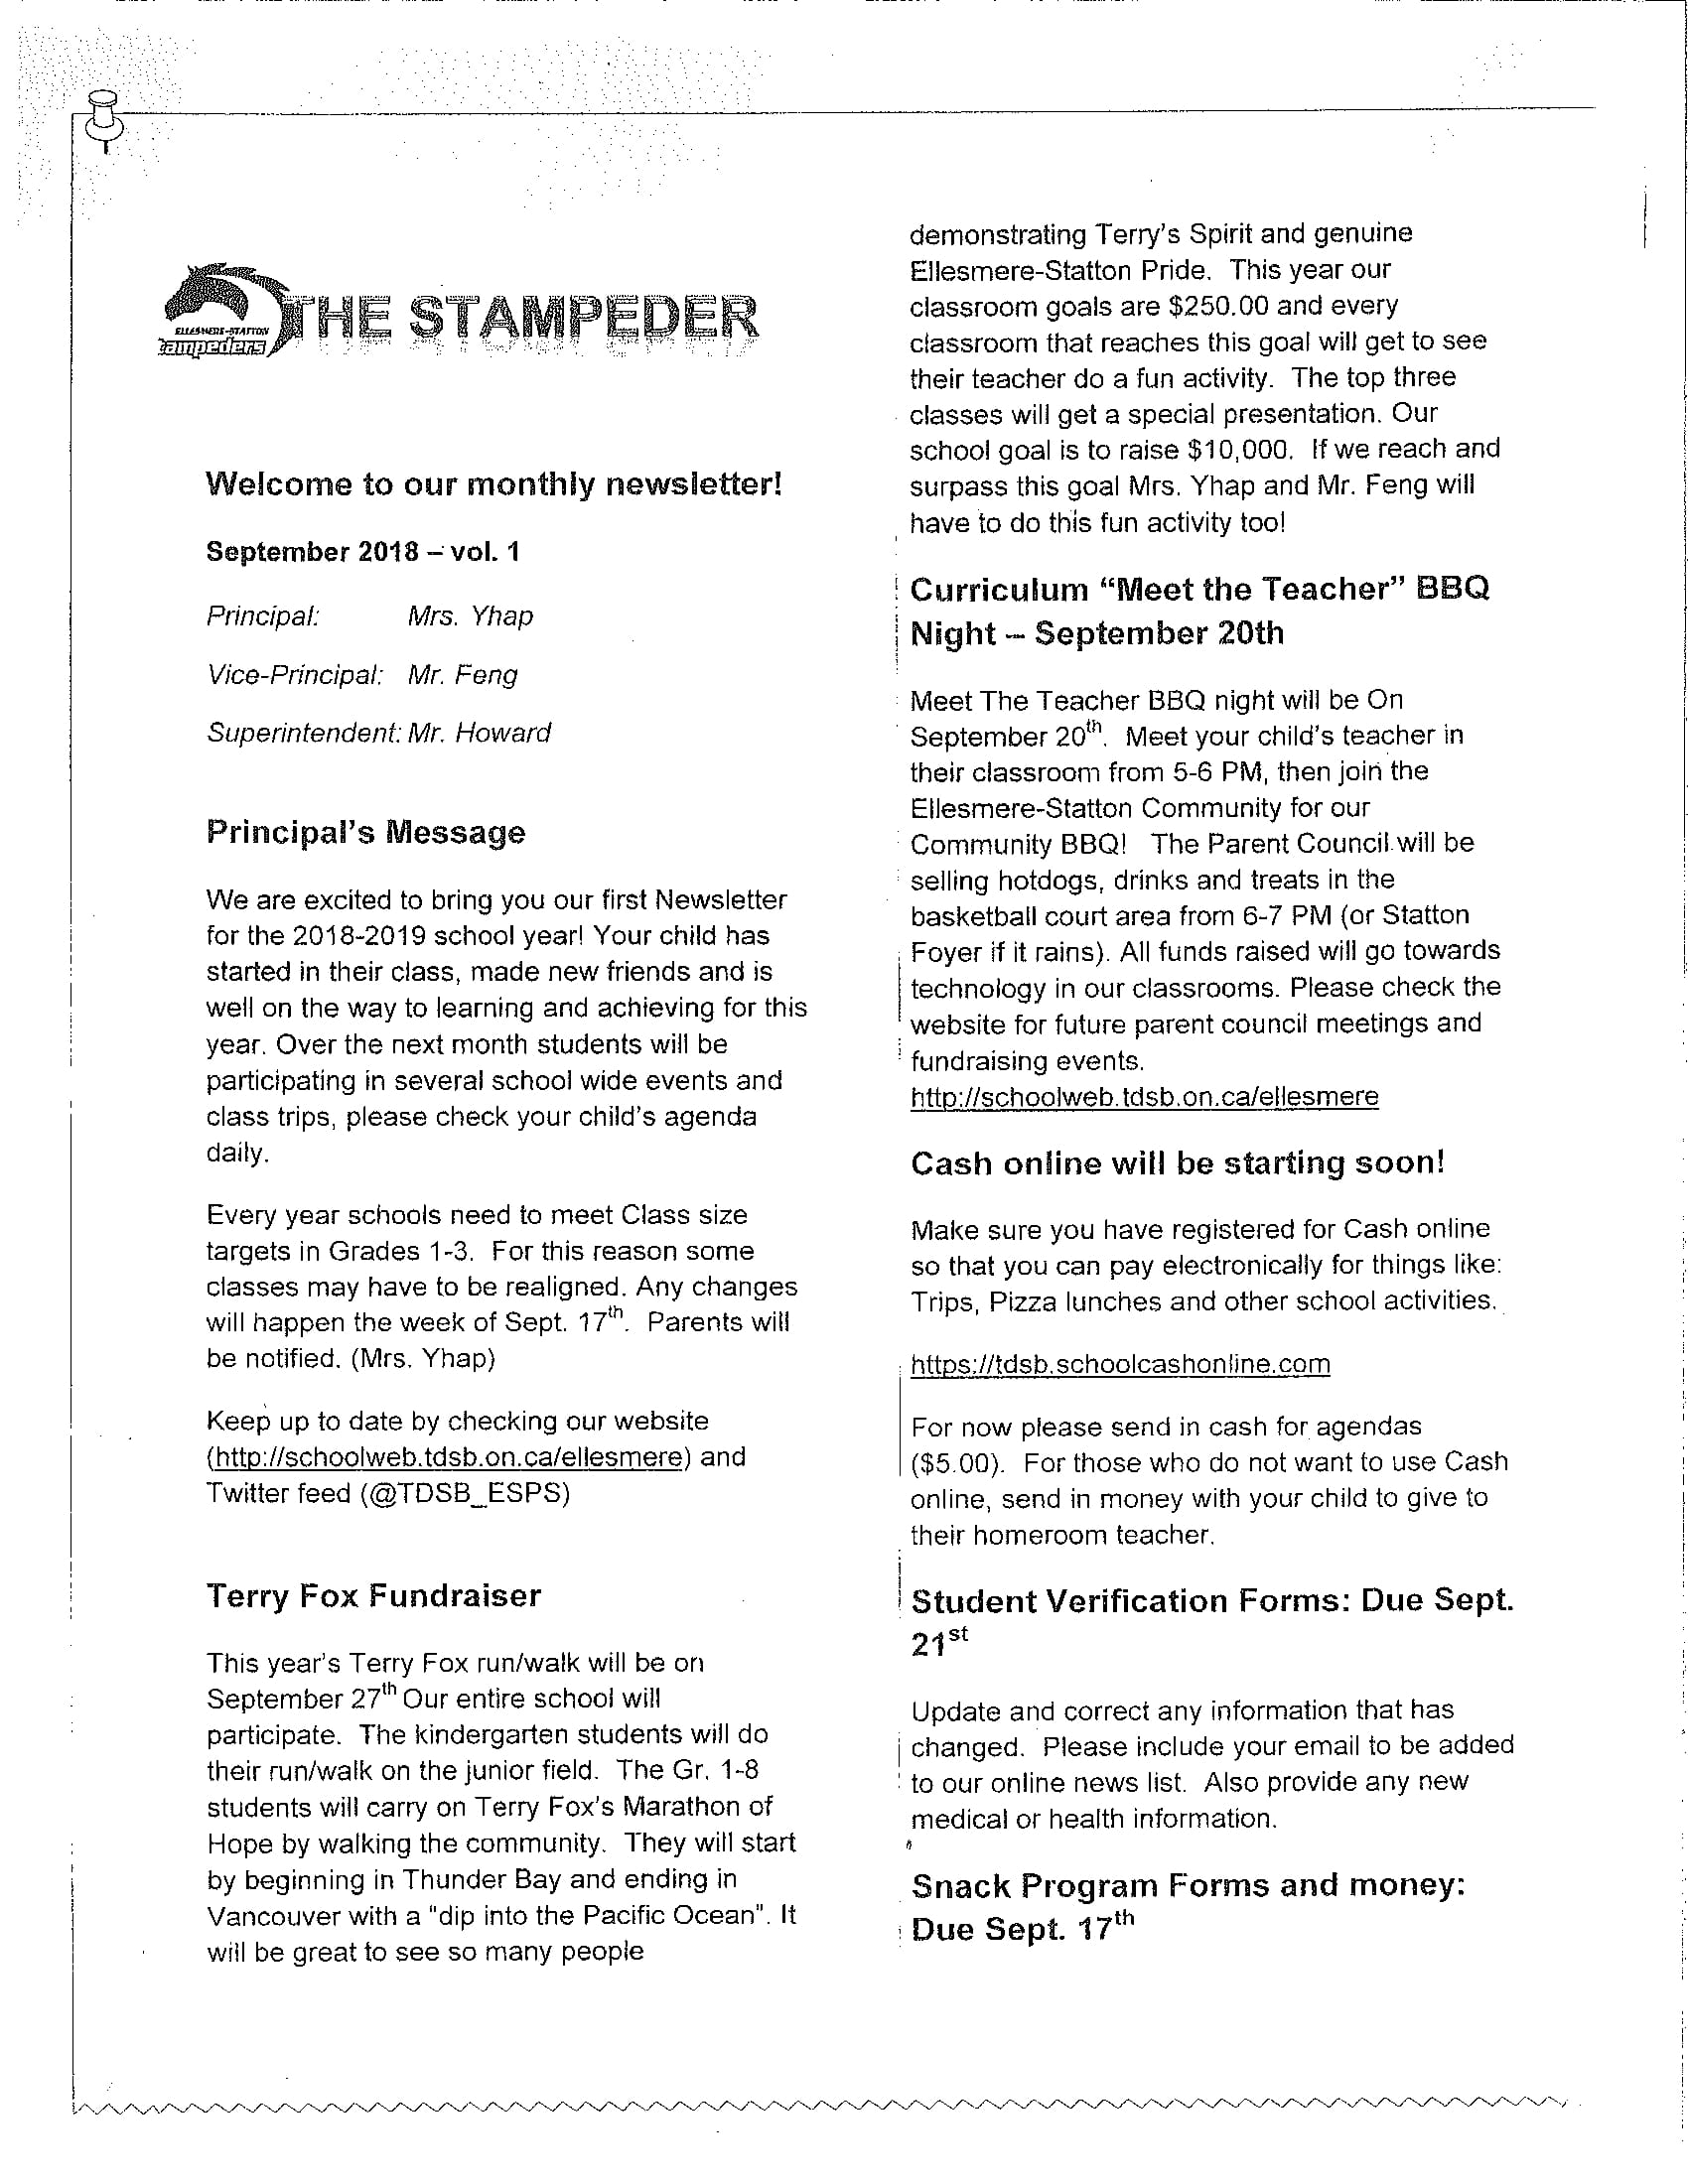 The Stampeder Newsletter Sept